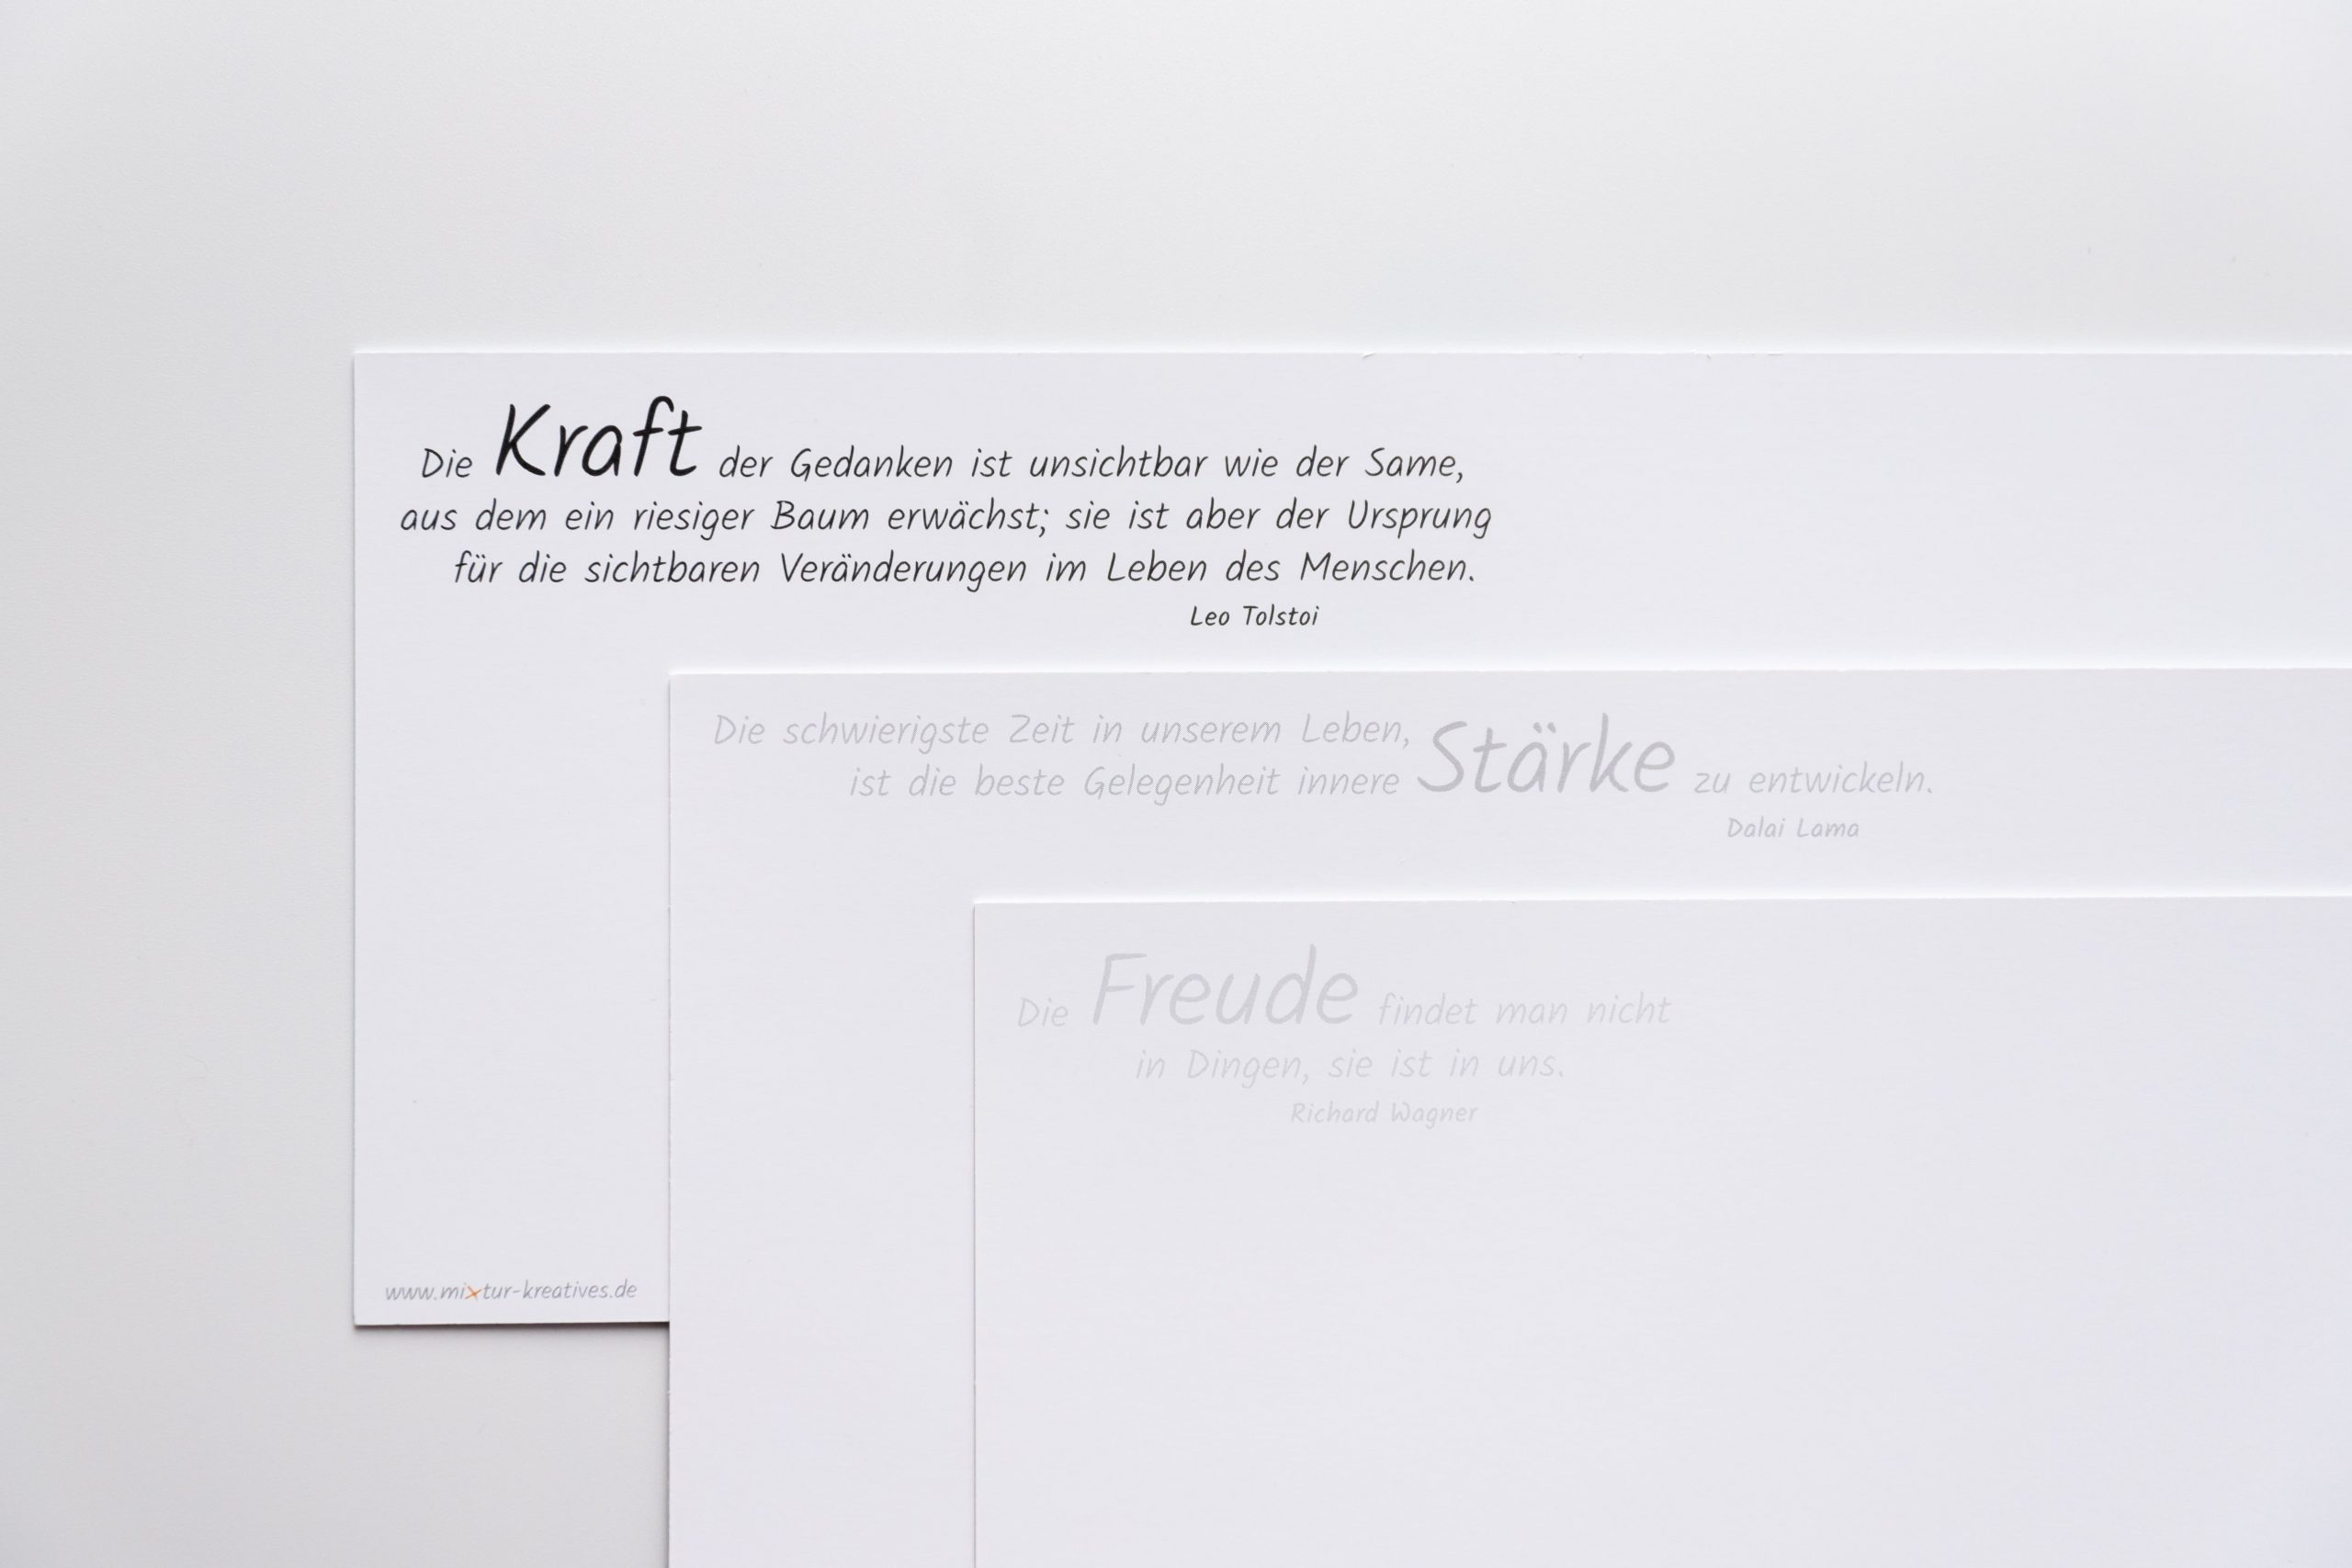 Grußkartenset "SW" bestehend aus den Wörterkarten "FREUDE", "STÄRKE" und "KRAFT"